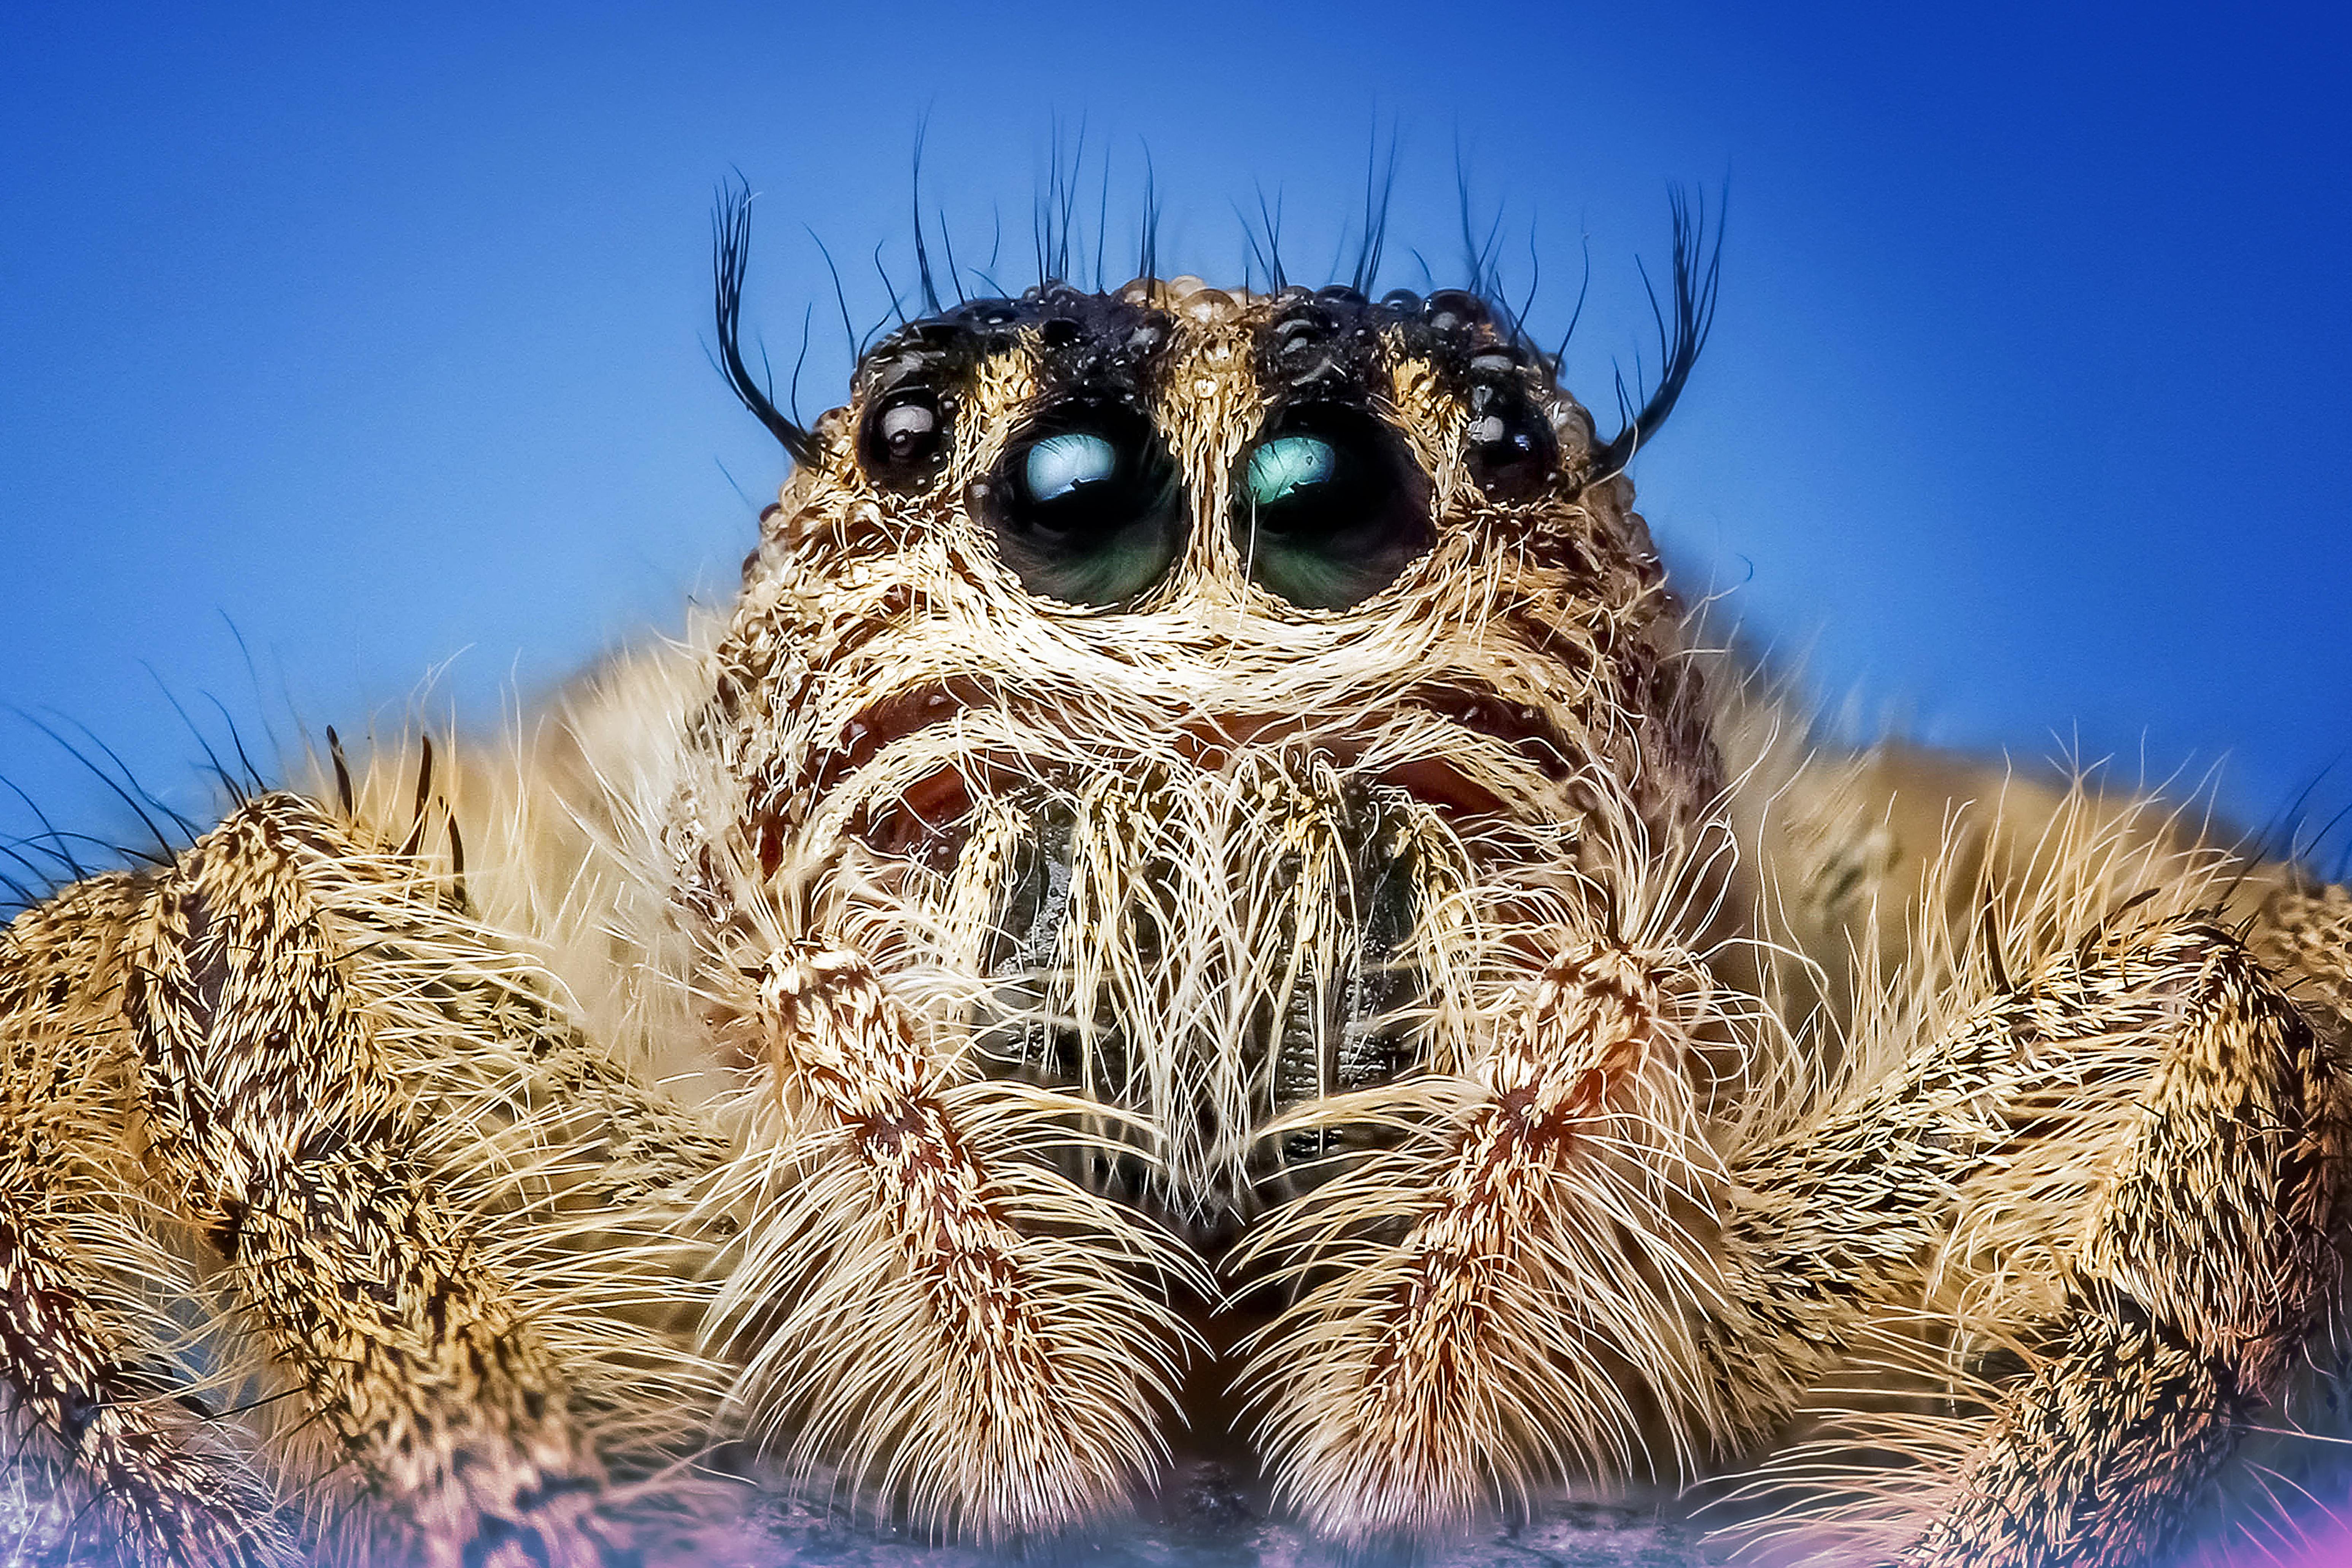 Regal Jumping Spider (Phidippus regius) - Available Jumping Spiders - Jumping  Spiders for Sale, Pet Store